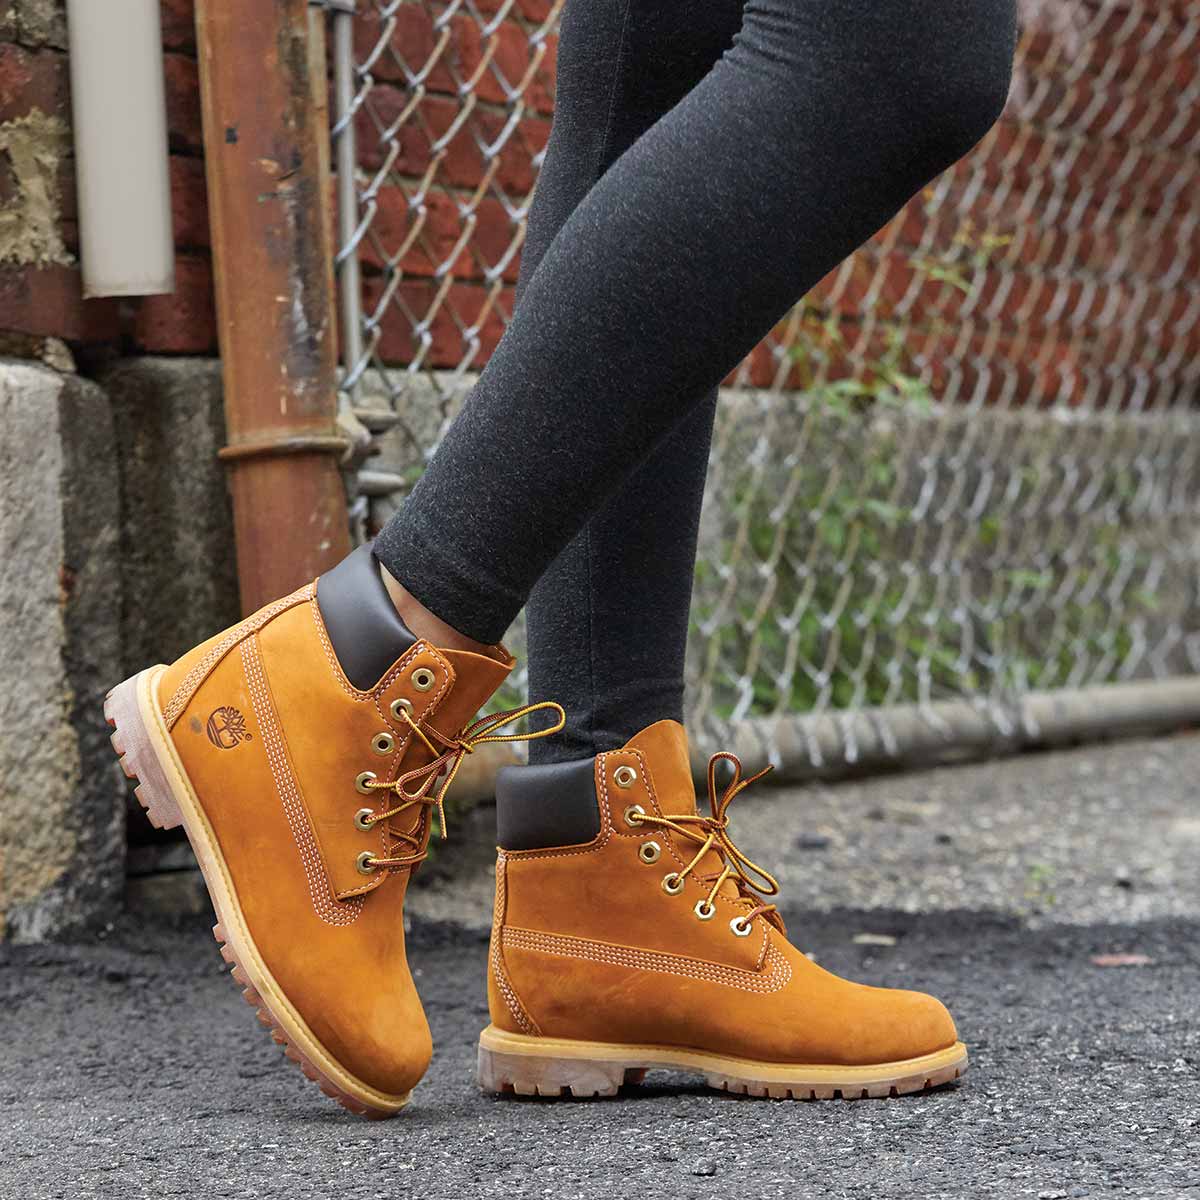 Timberland Tree Women's 6-Inch Premium Waterproof Wheat Boots